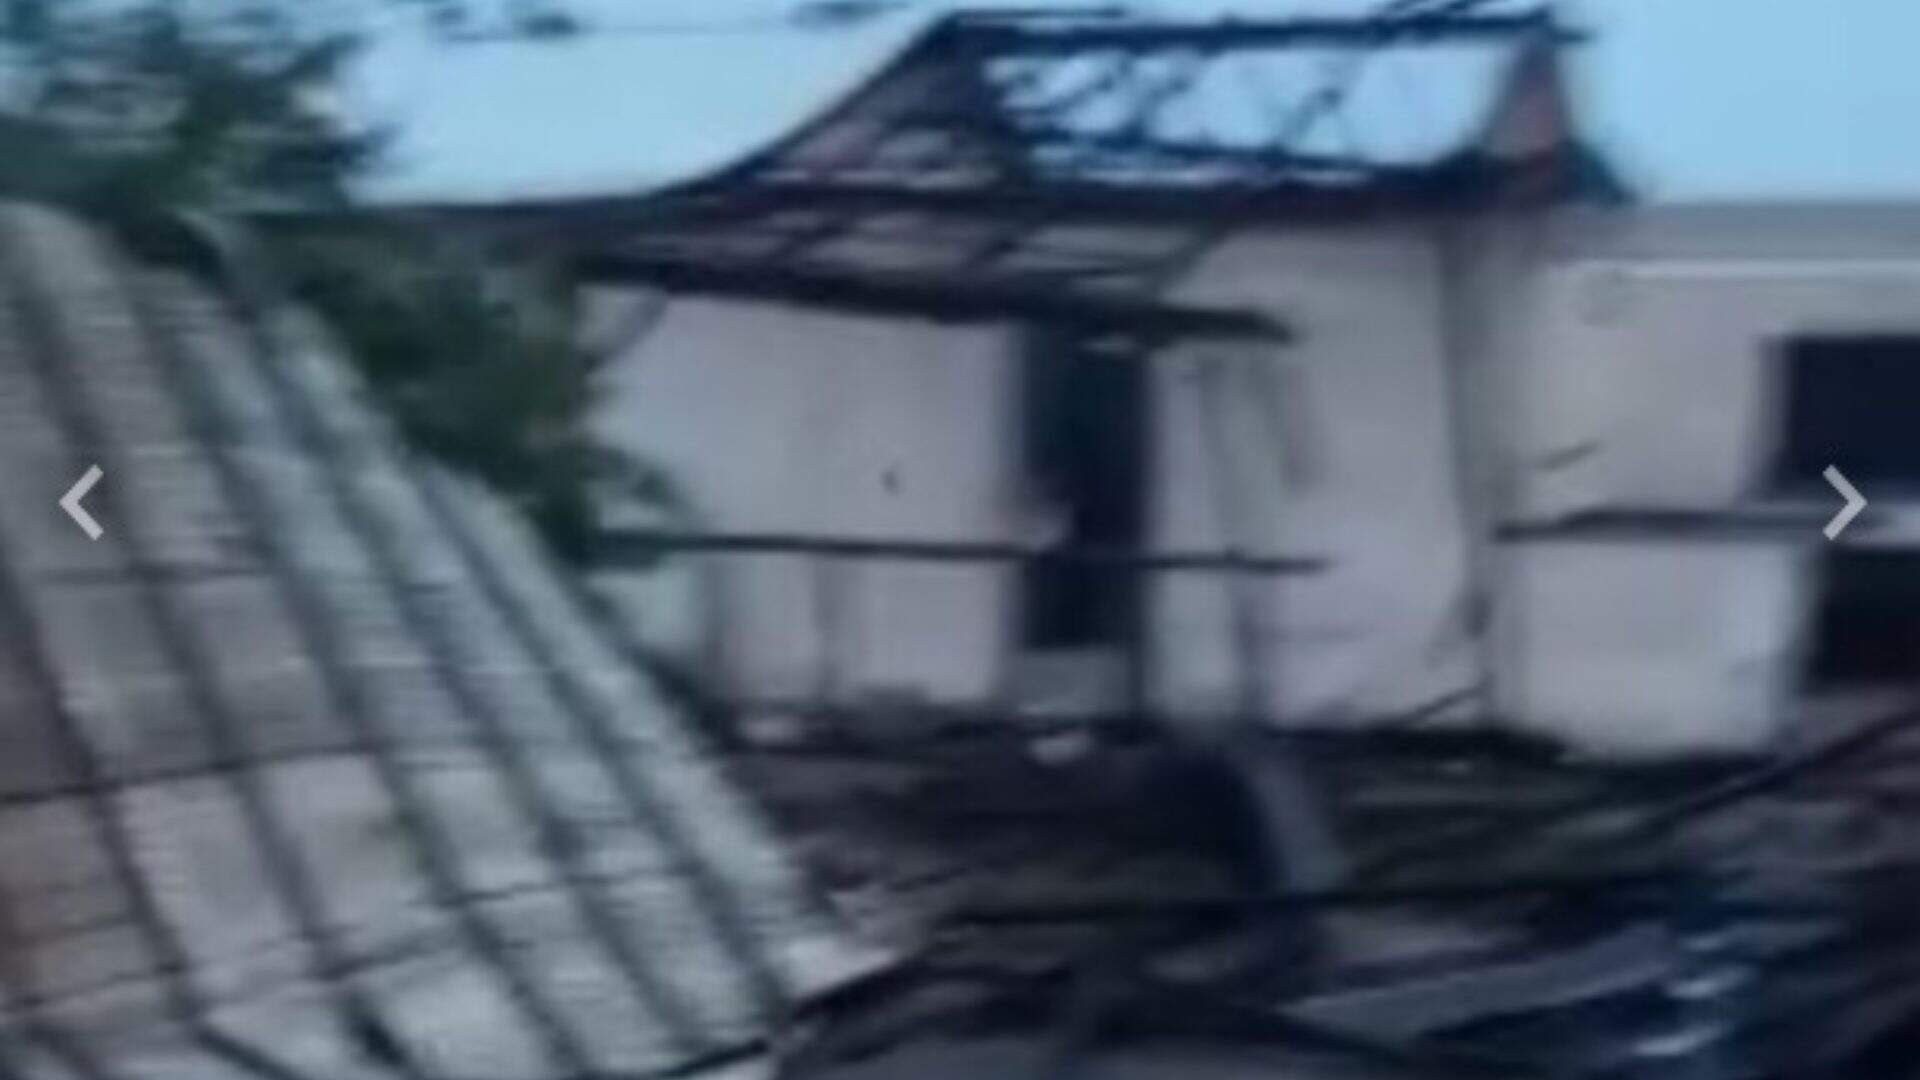 Ventania derruba paredes de casa e deixa família desabrigada em Rio Negro